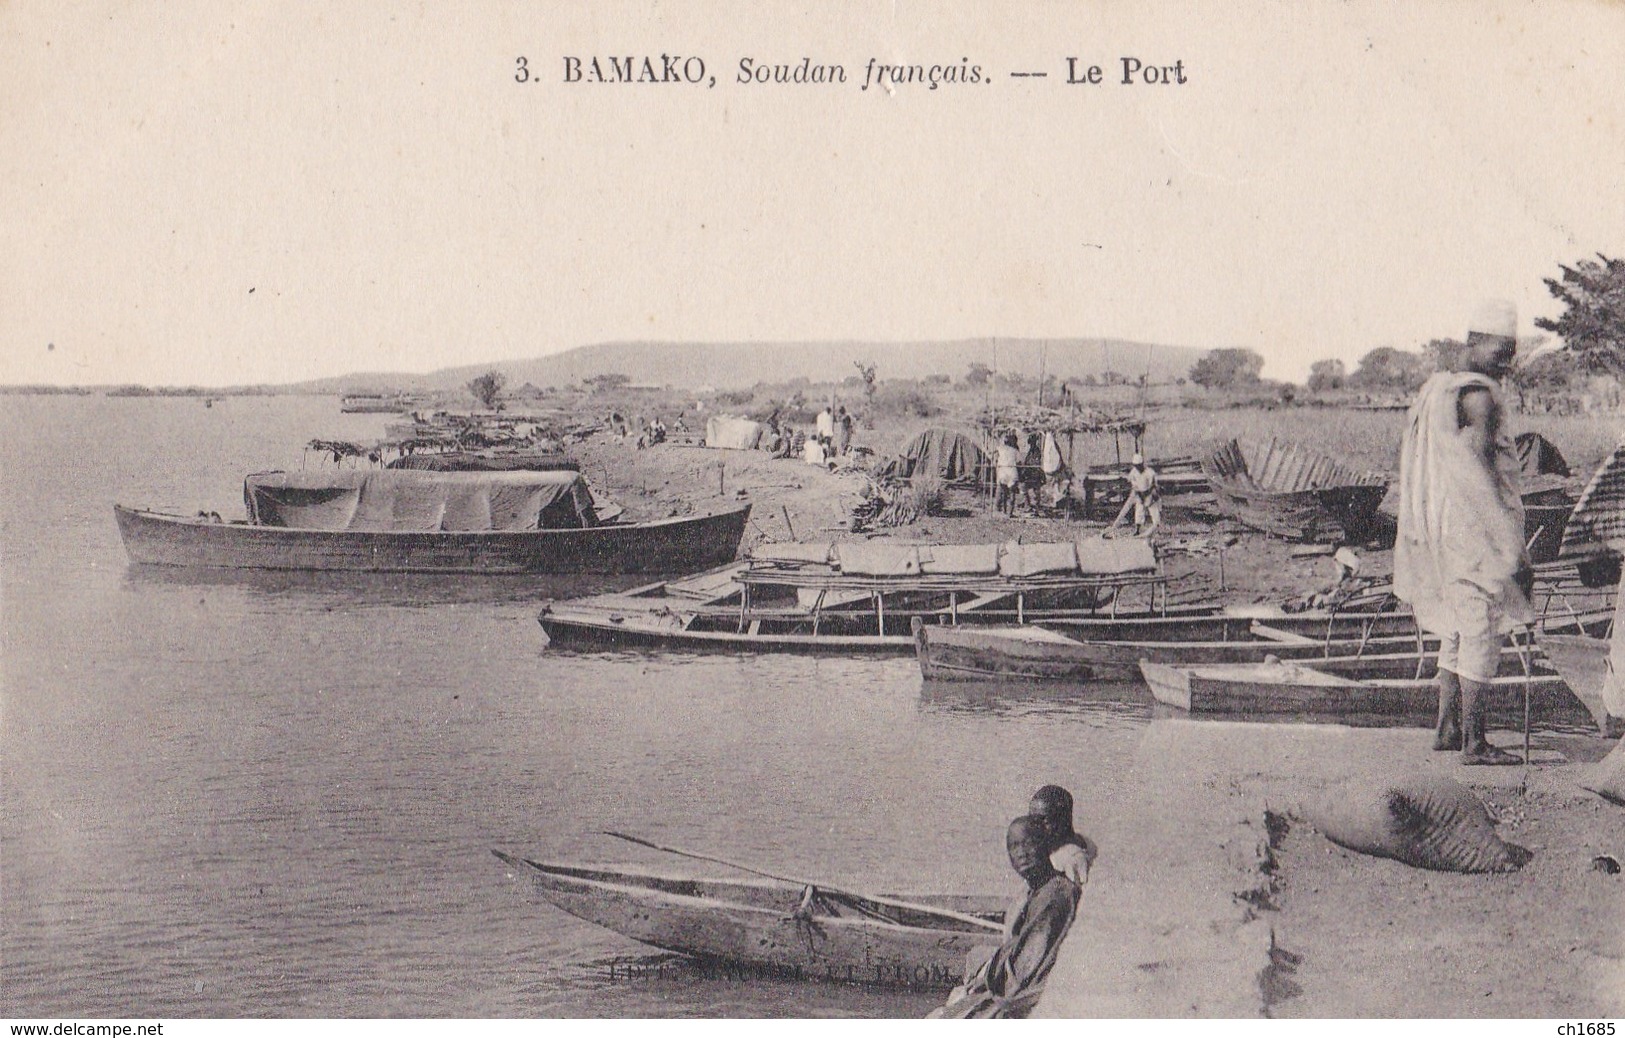 SOUDAN FRANCAIS : MALI : BAMAKO  Le Port - Mali